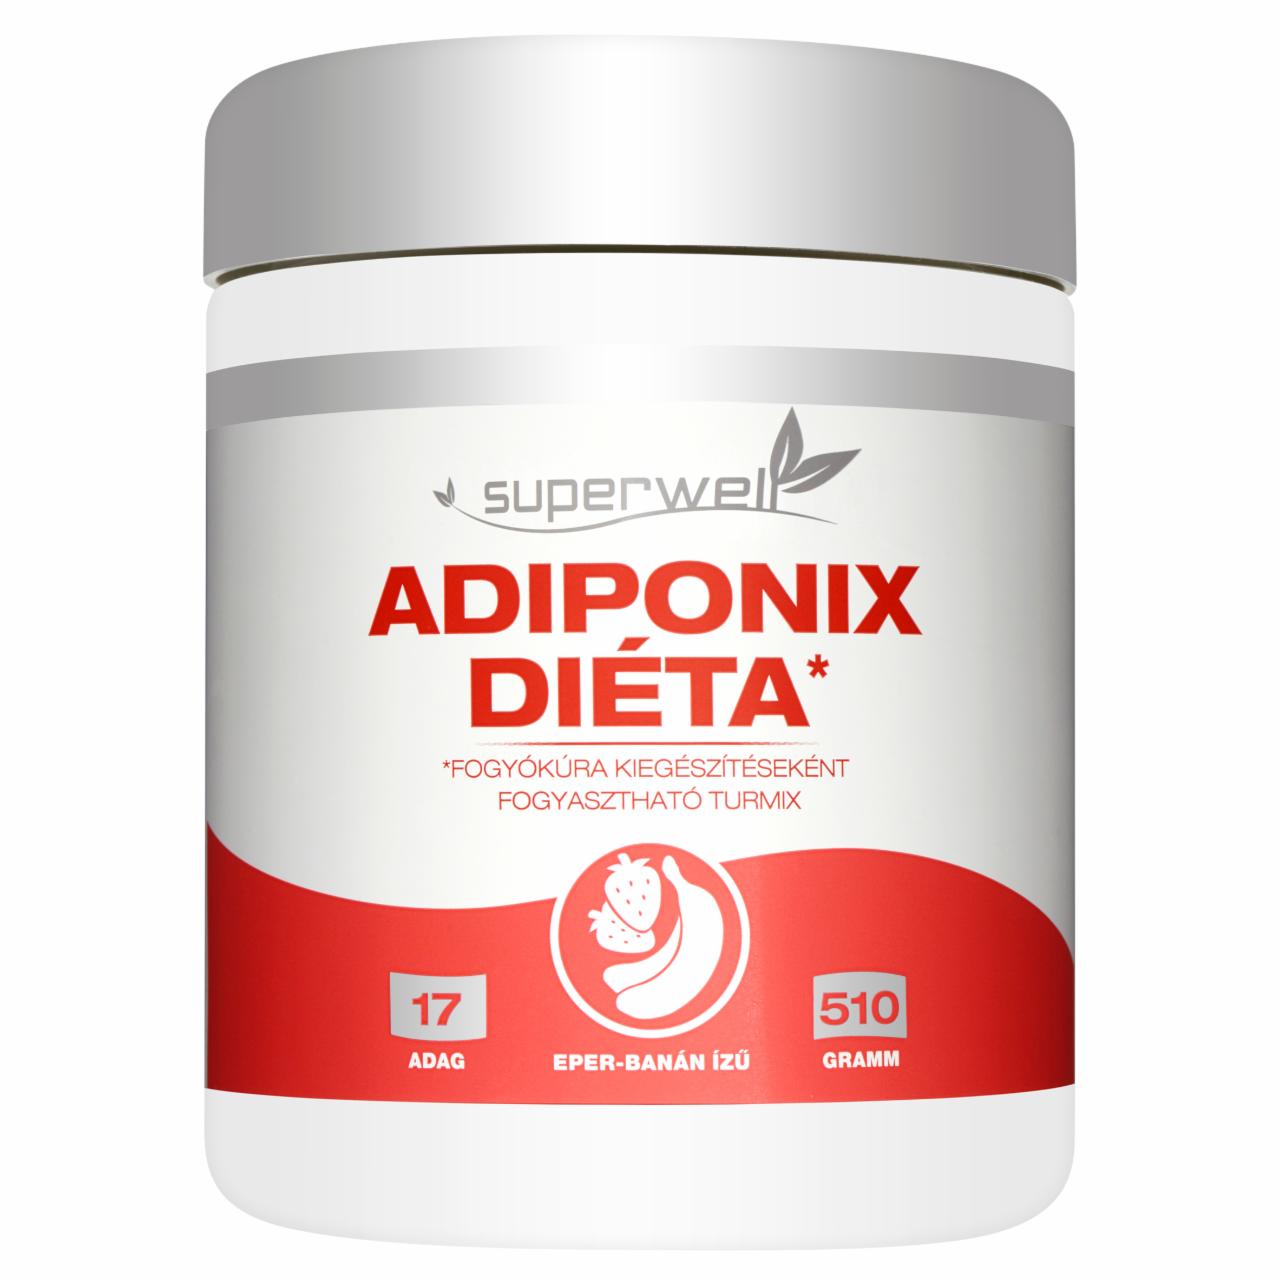 Képek - Superwell Adiponix Diéta eper-banán ízű fehérje alapú étrend-kiegészítő italpor 510 g